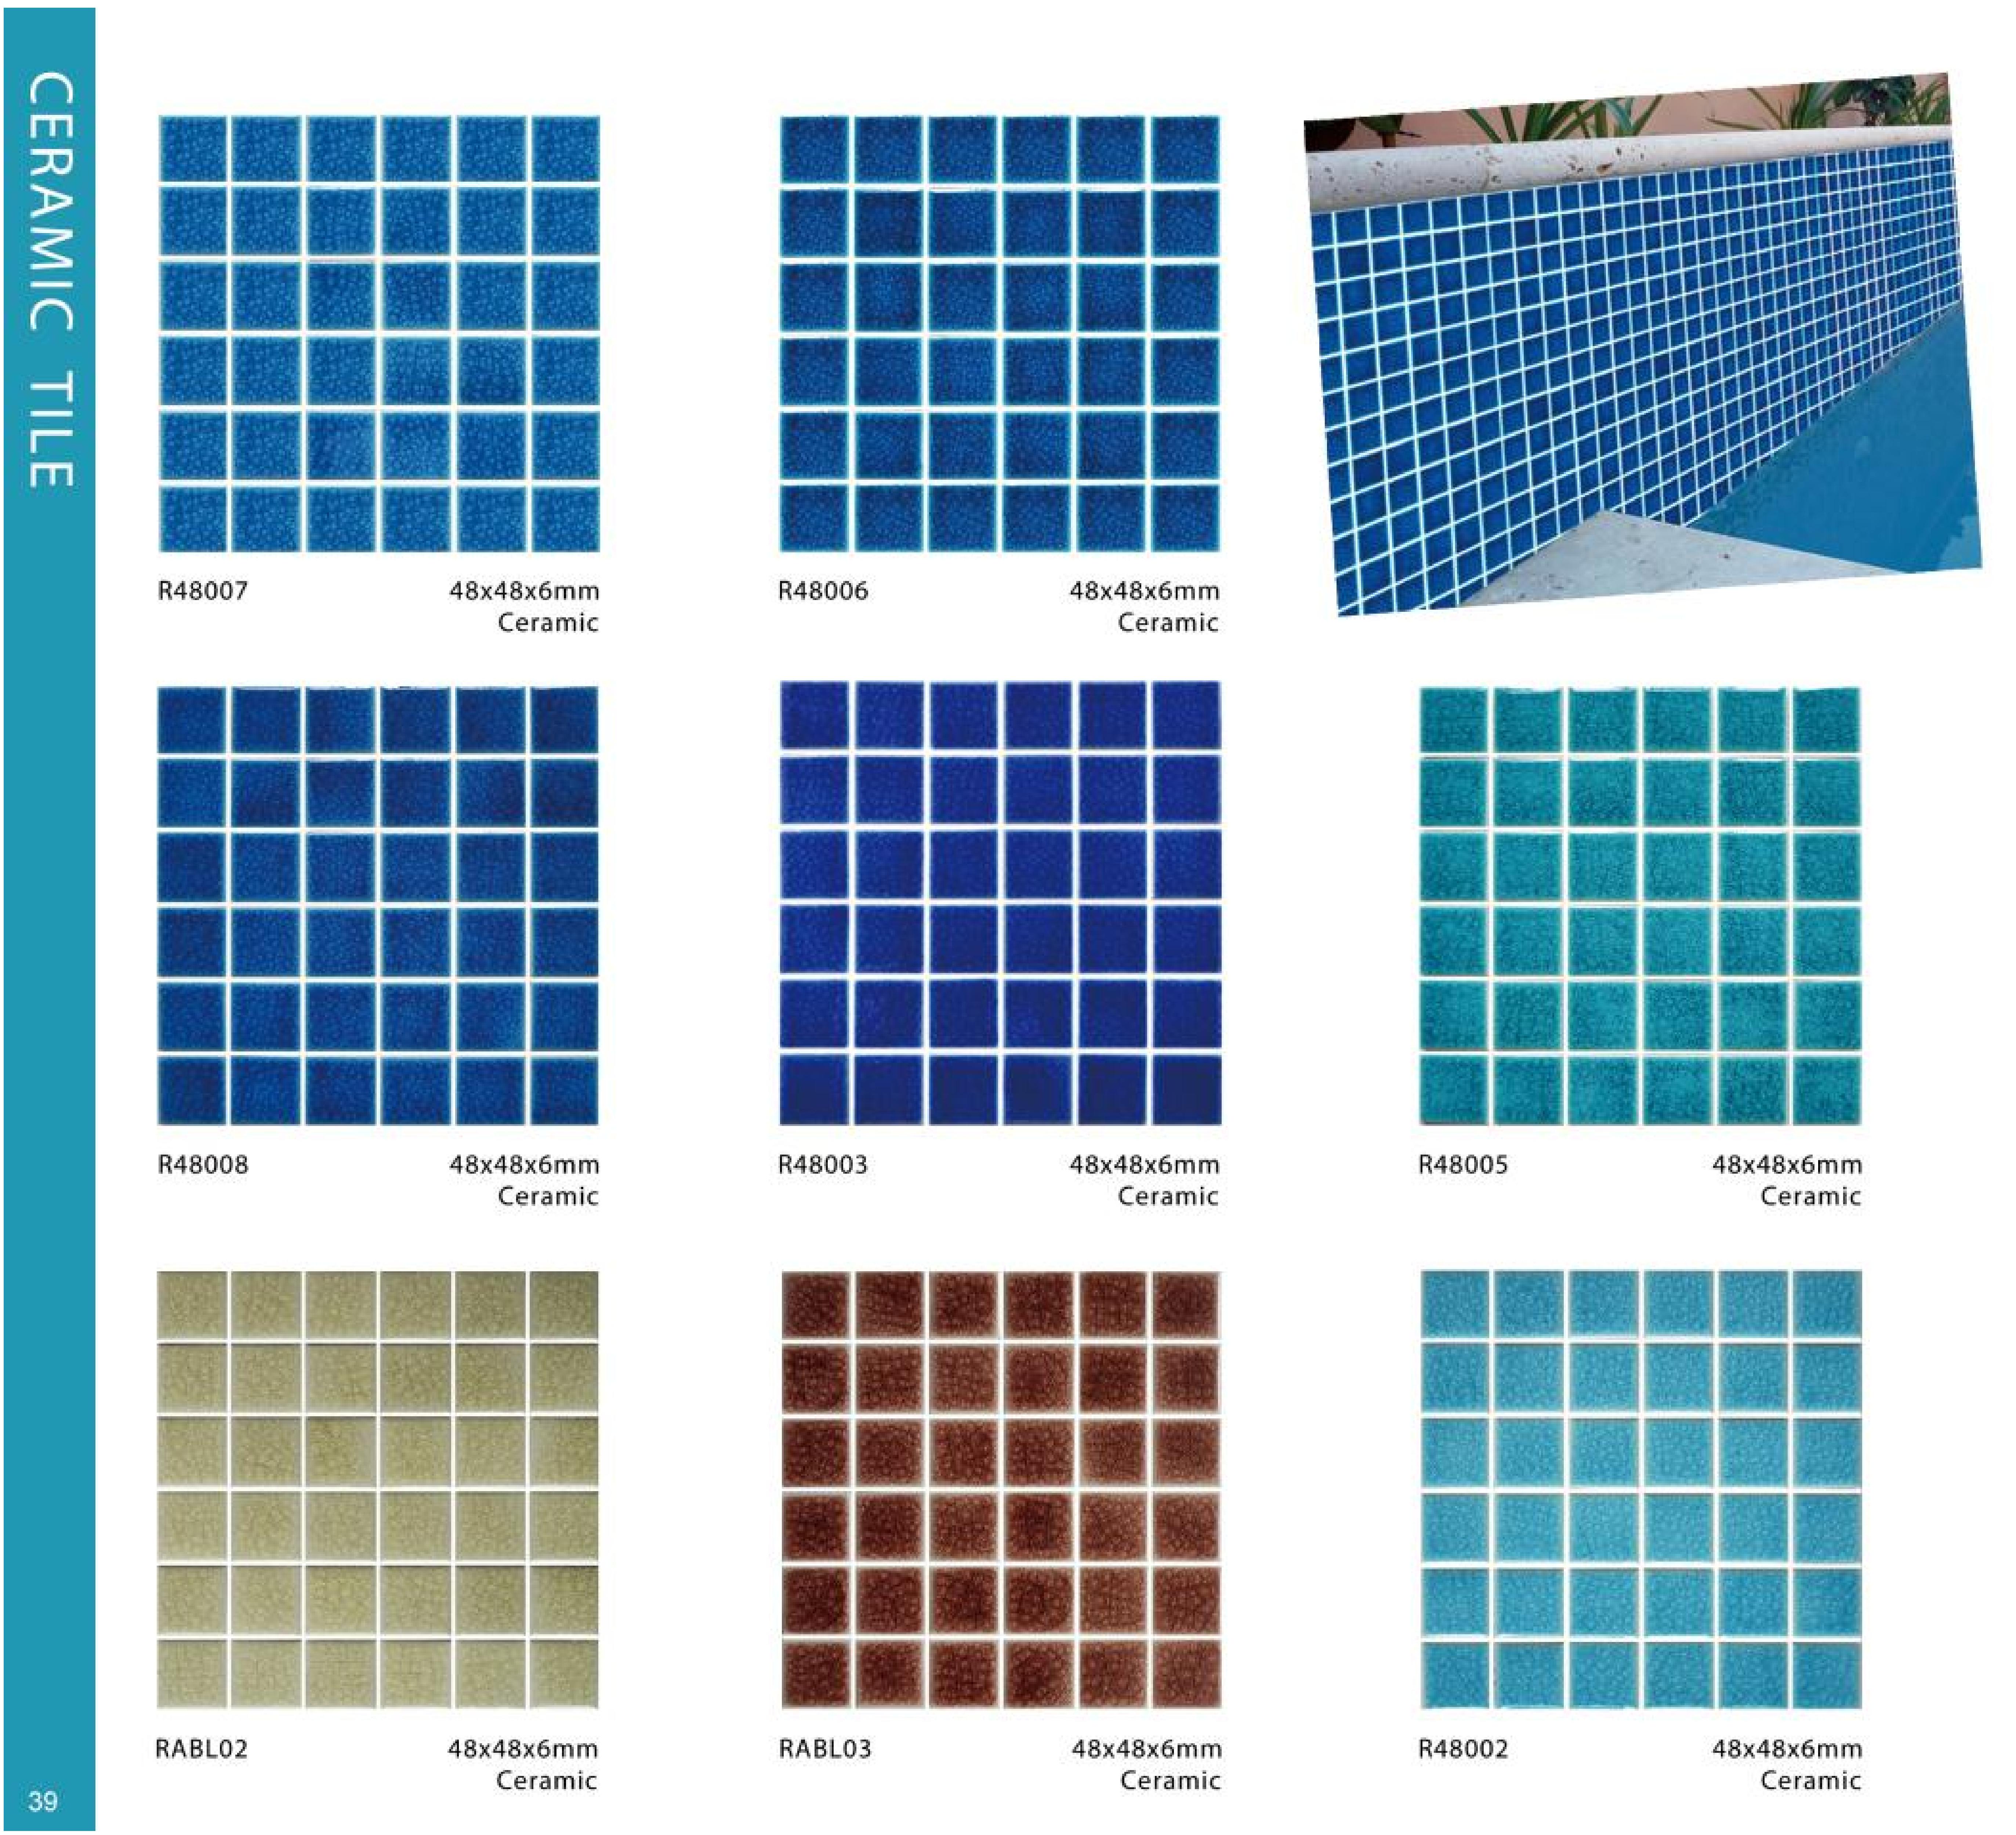 2023 Swimming Pool Tiles - Ralart_39.jpg